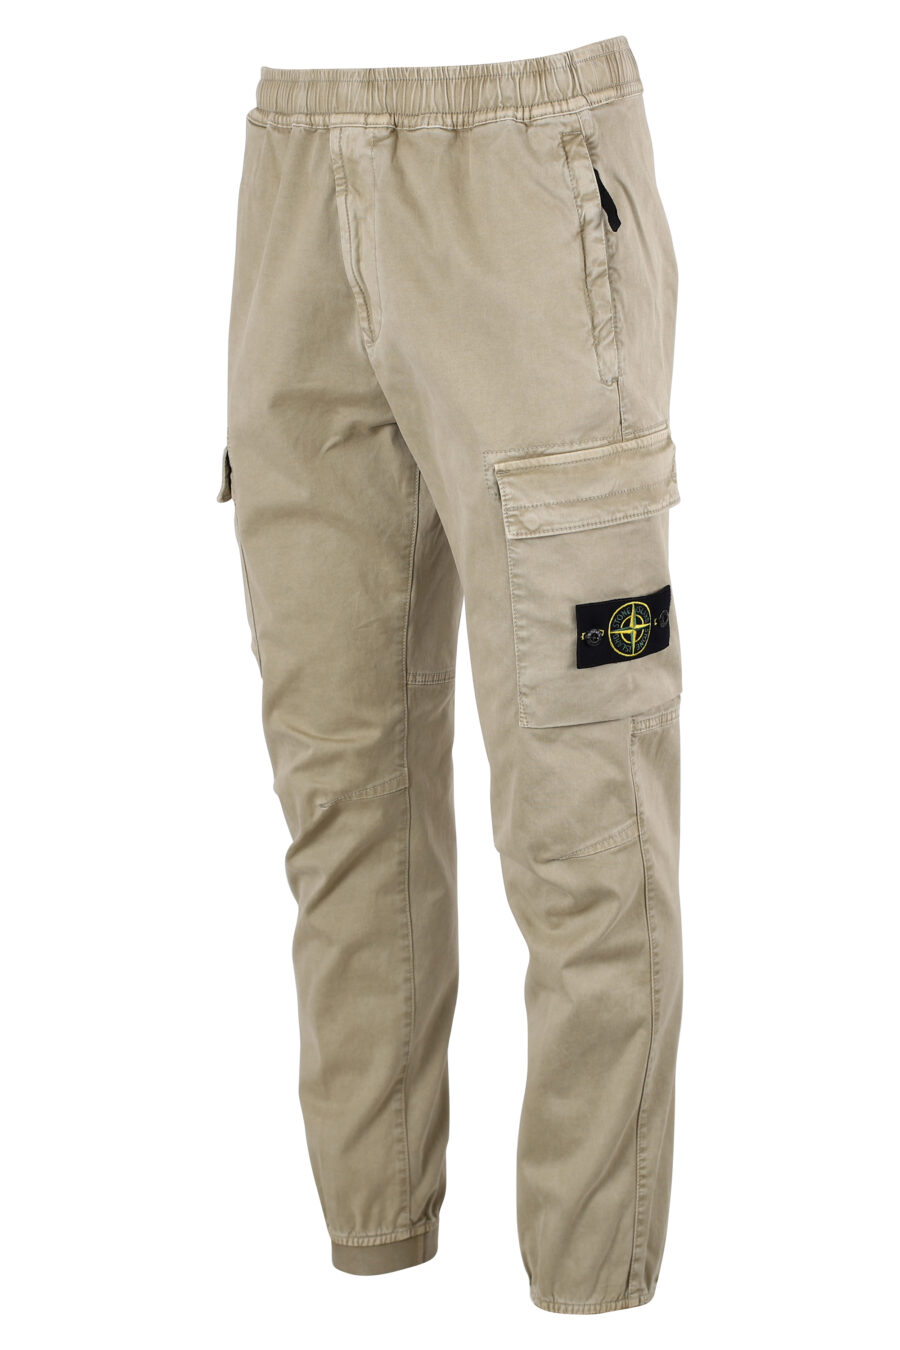 Pantalon cargo beige avec patch latéral - IMG 8326